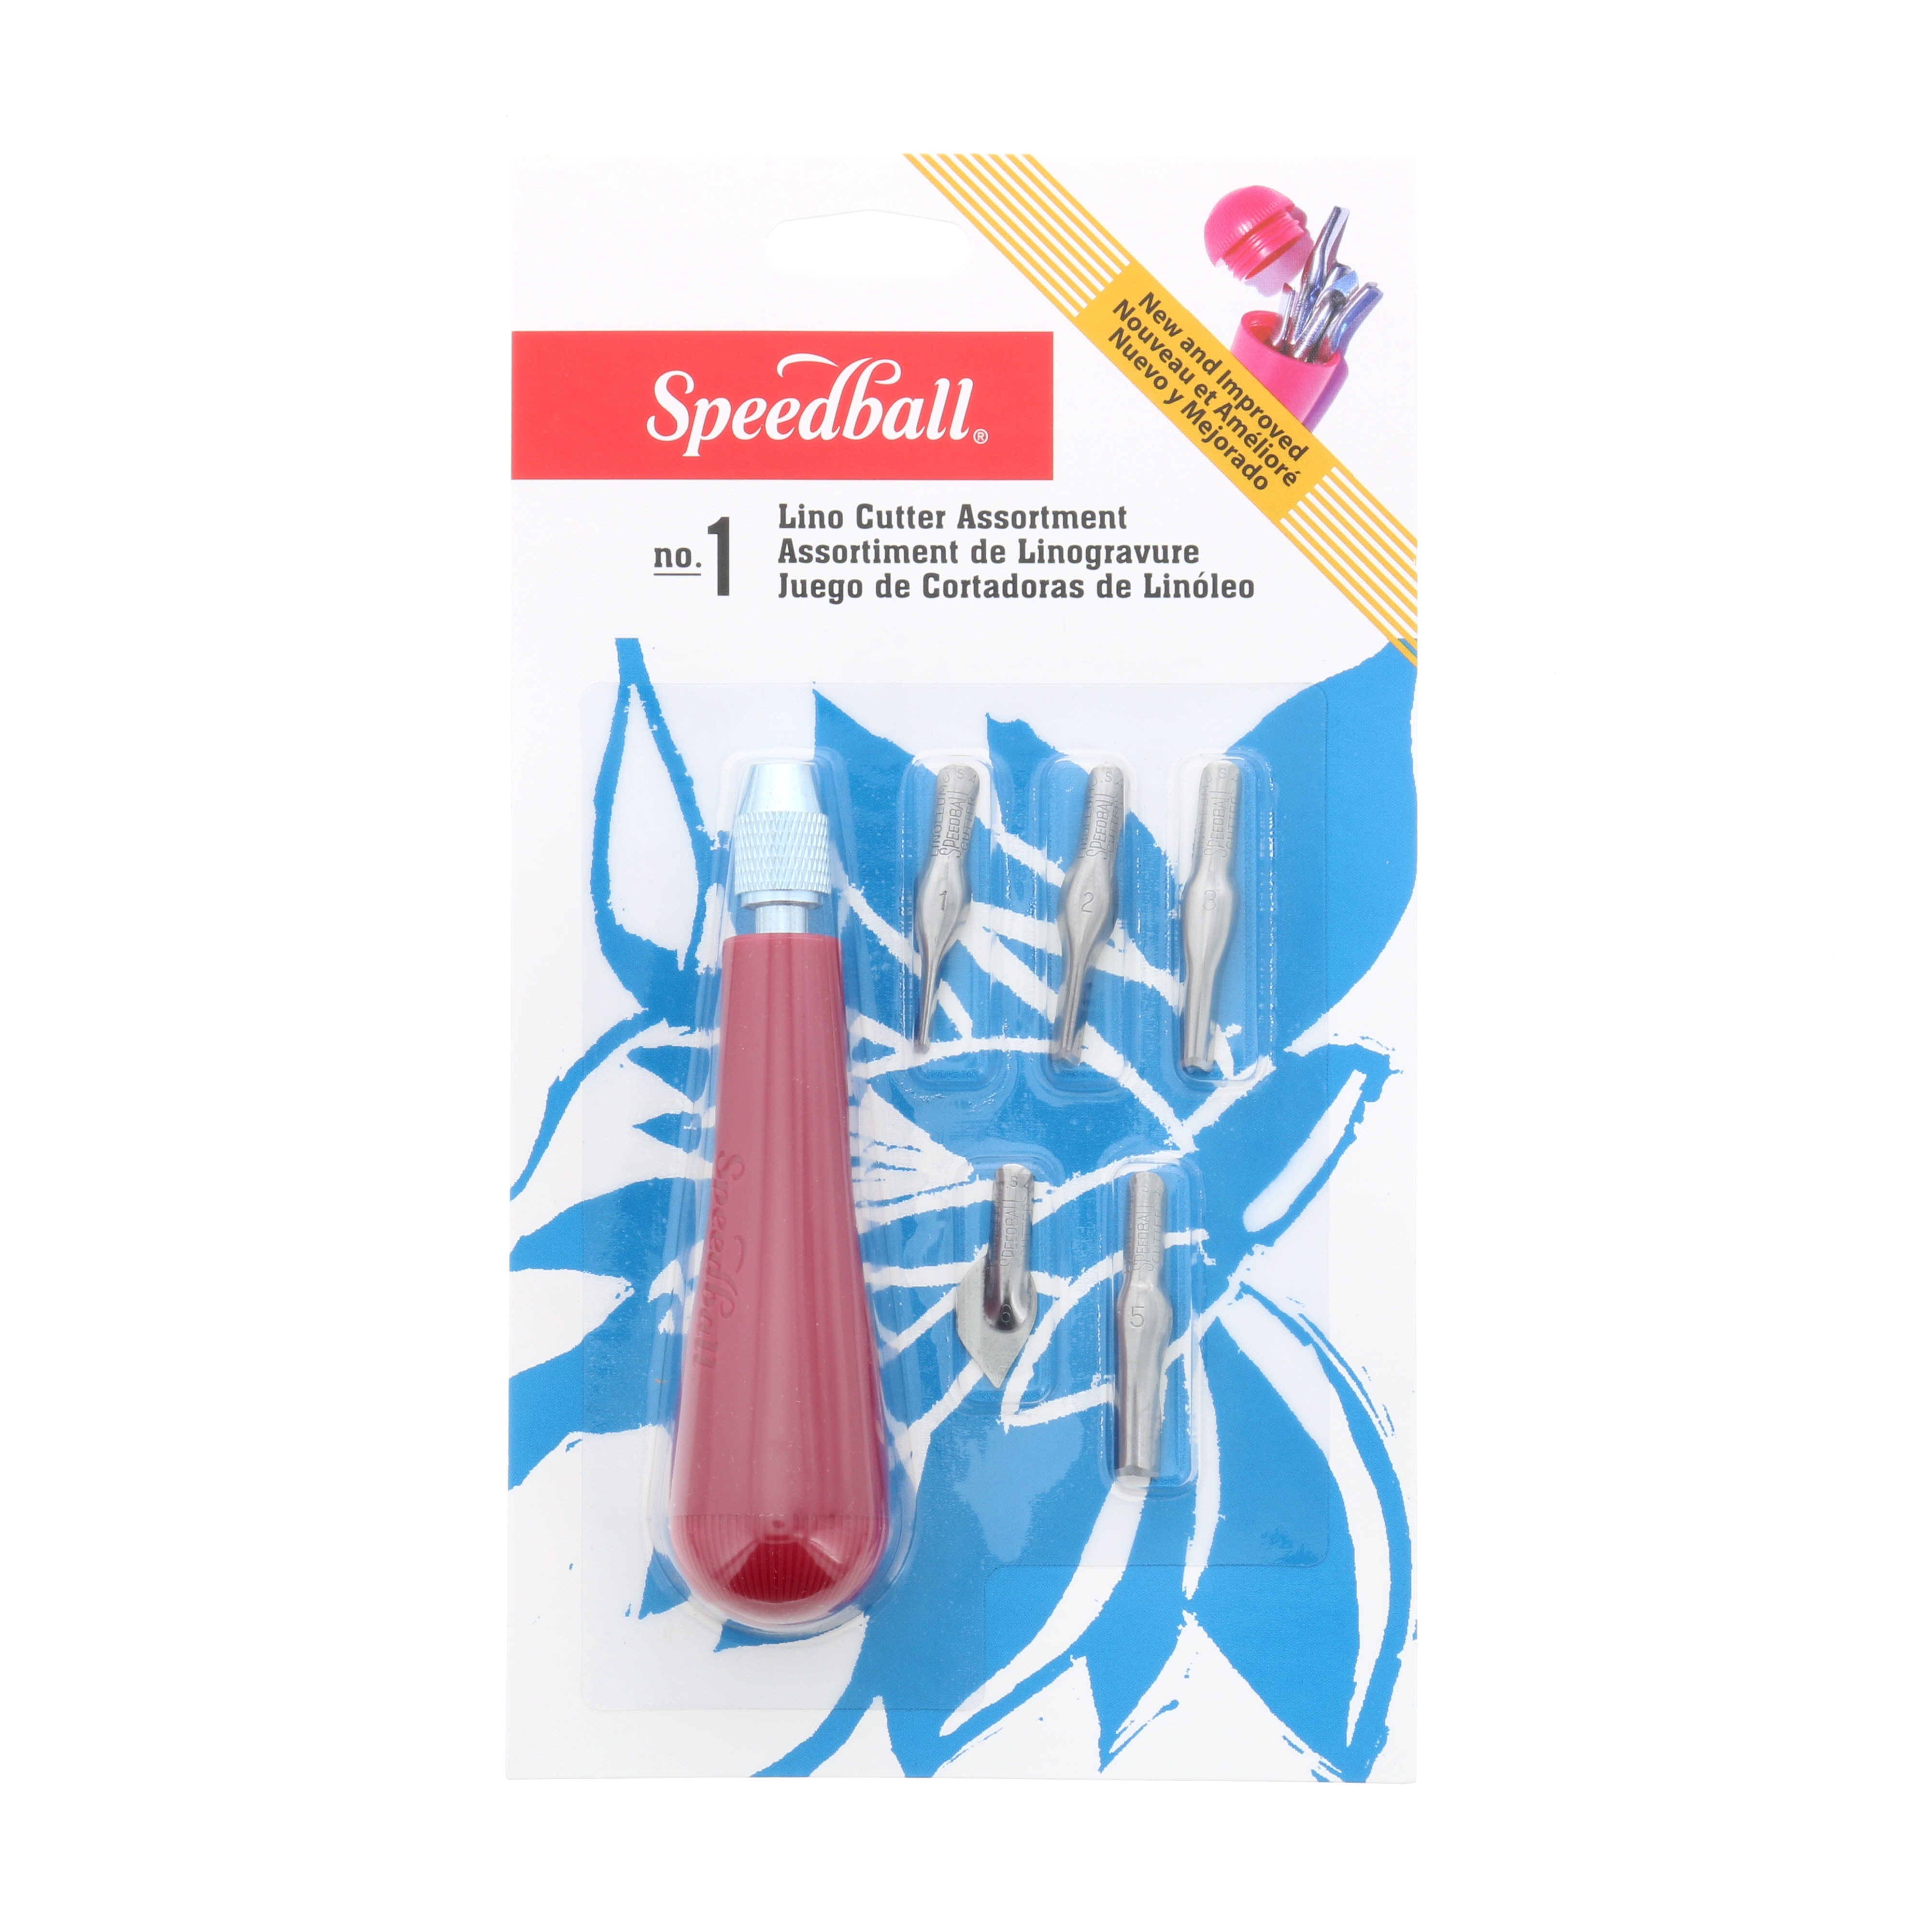  Speedball Linoleum Cutter Kit Assortment #1 - Linocut